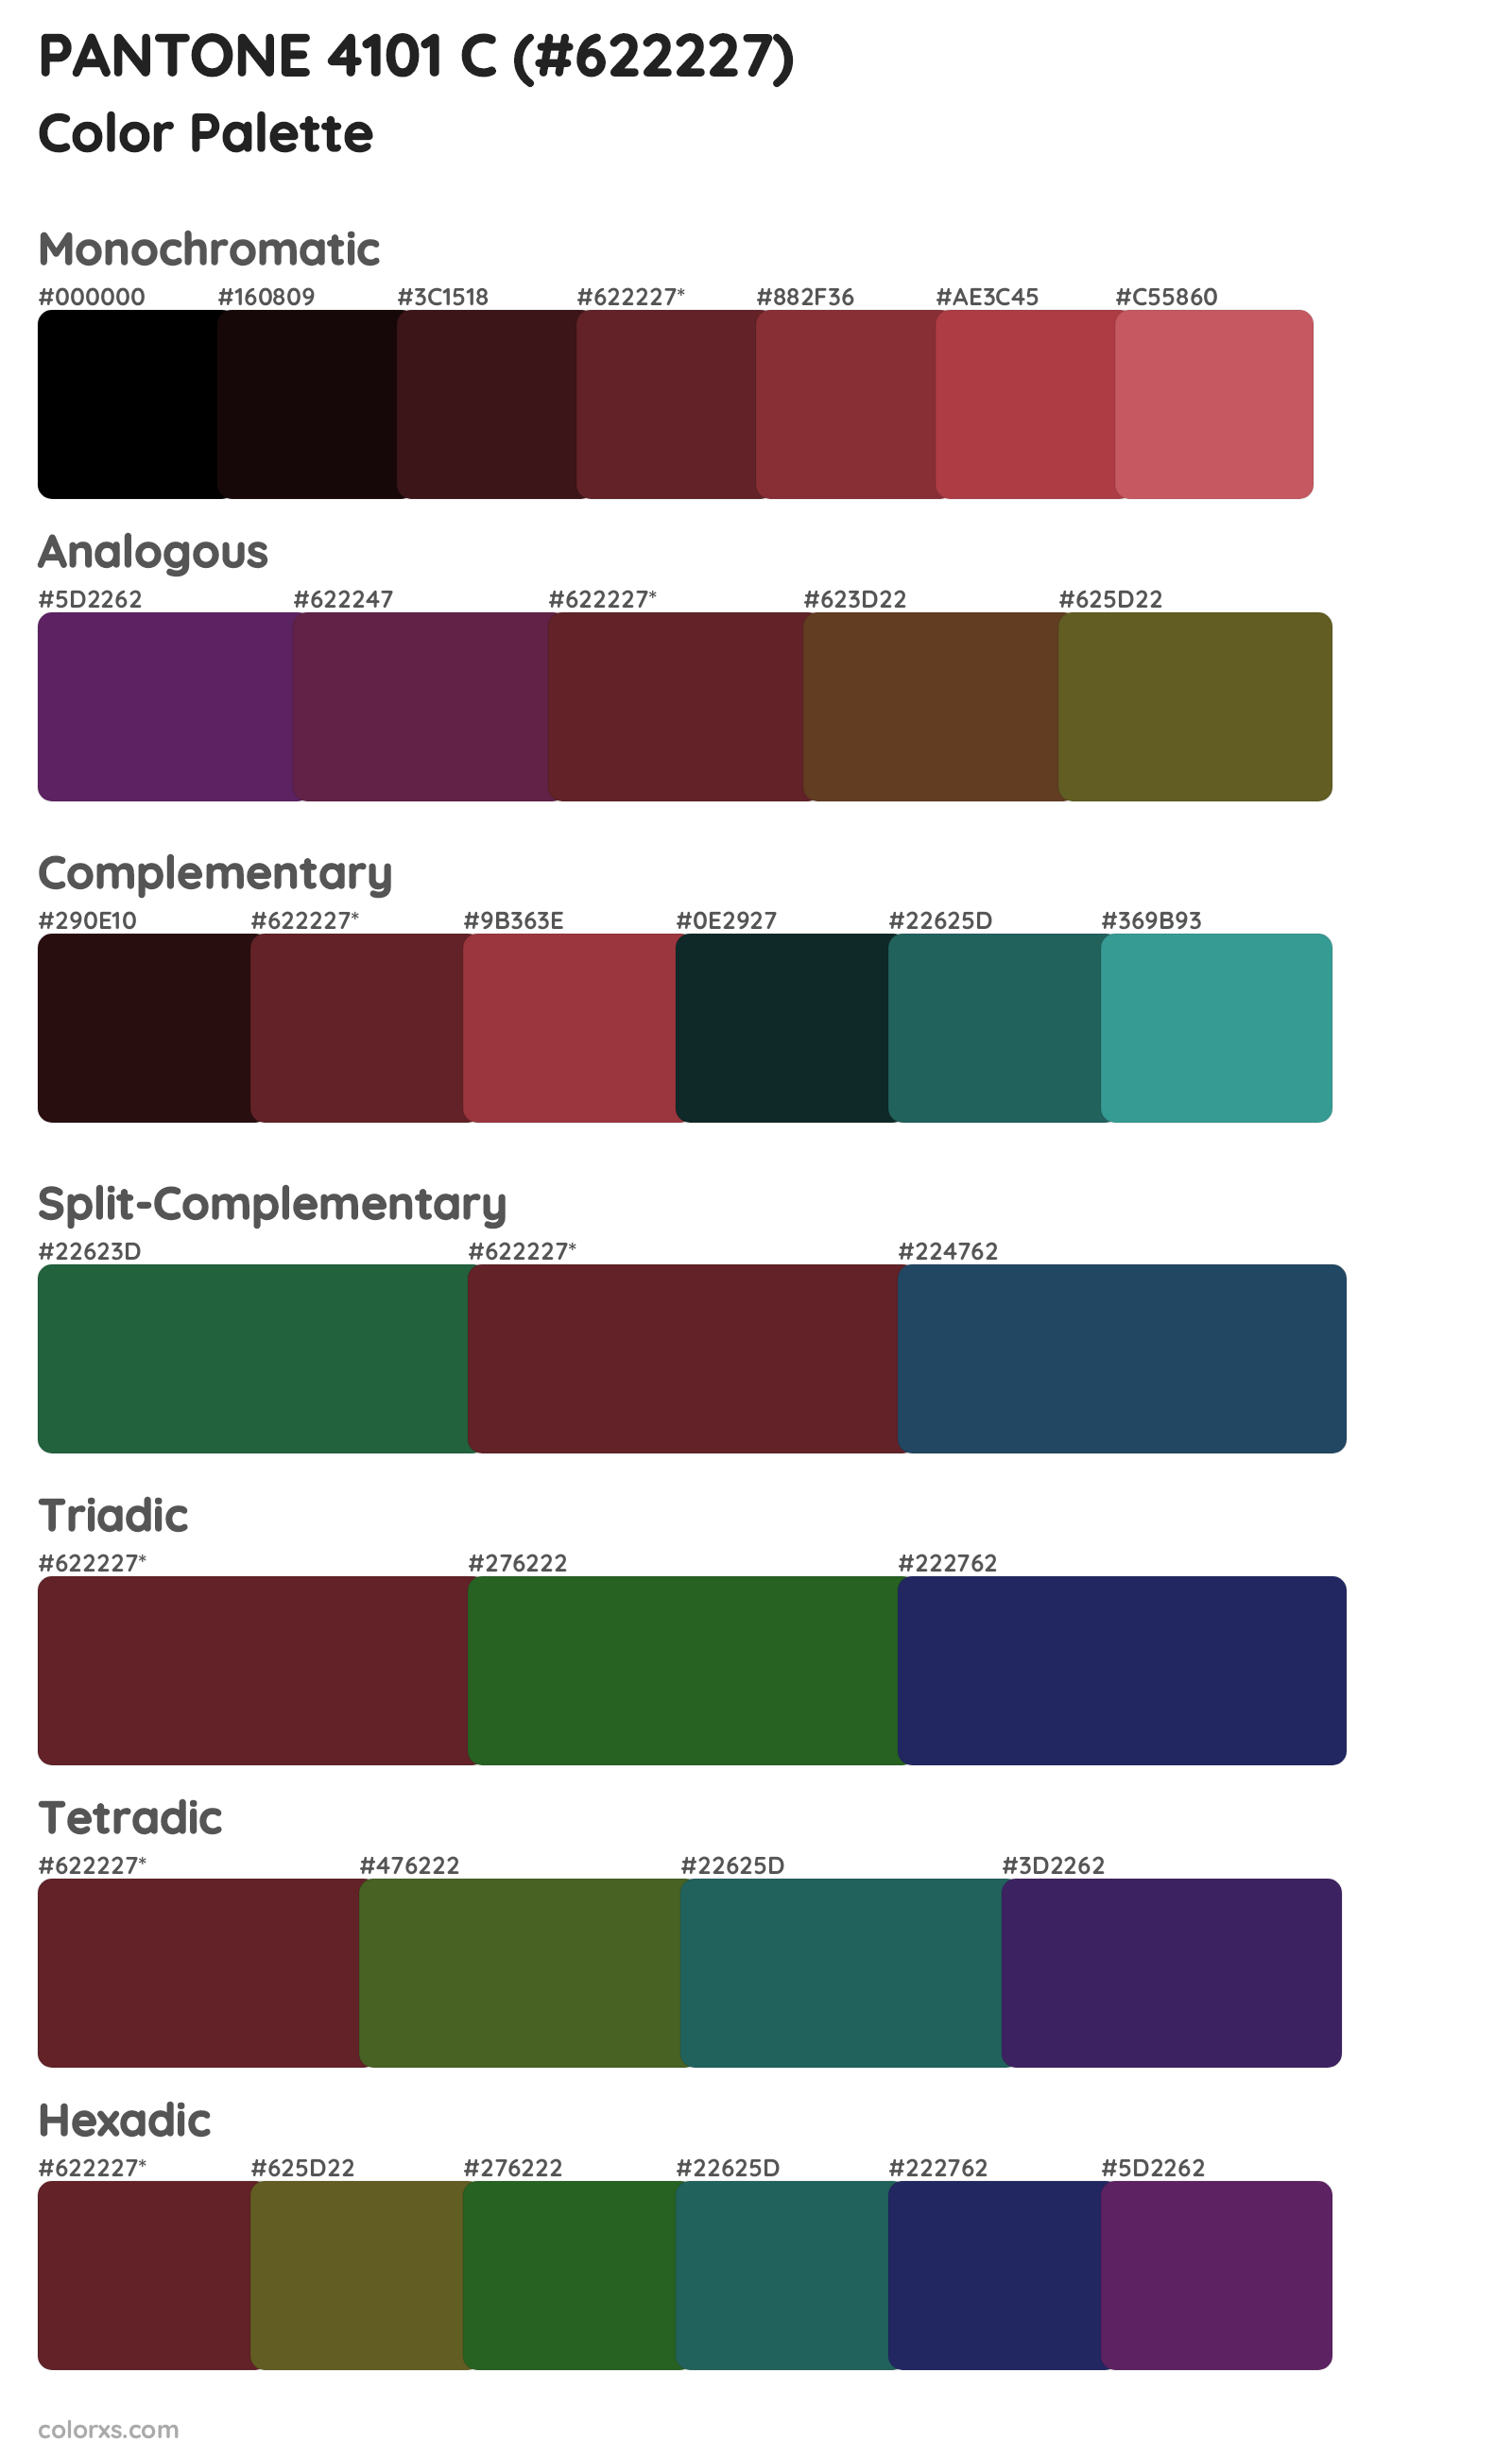 PANTONE 4101 C Color Scheme Palettes